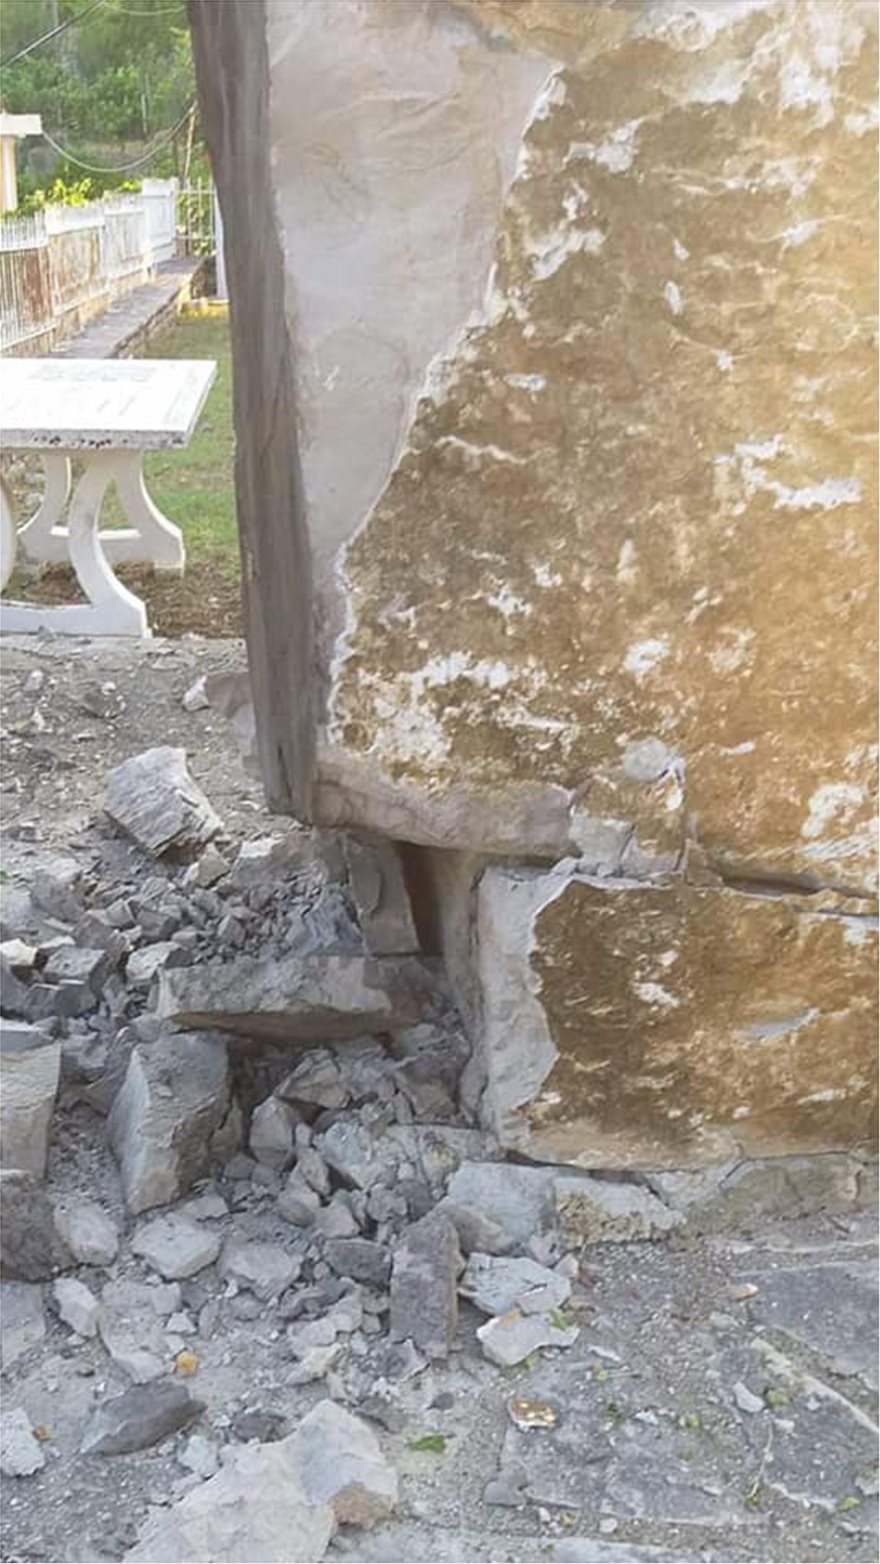 Αλβανοί εθνικιστές κατέστρεψαν μνημείο σε ελληνικό χωριό στη Βόρεια Ήπειρο - Φωτογραφία 3